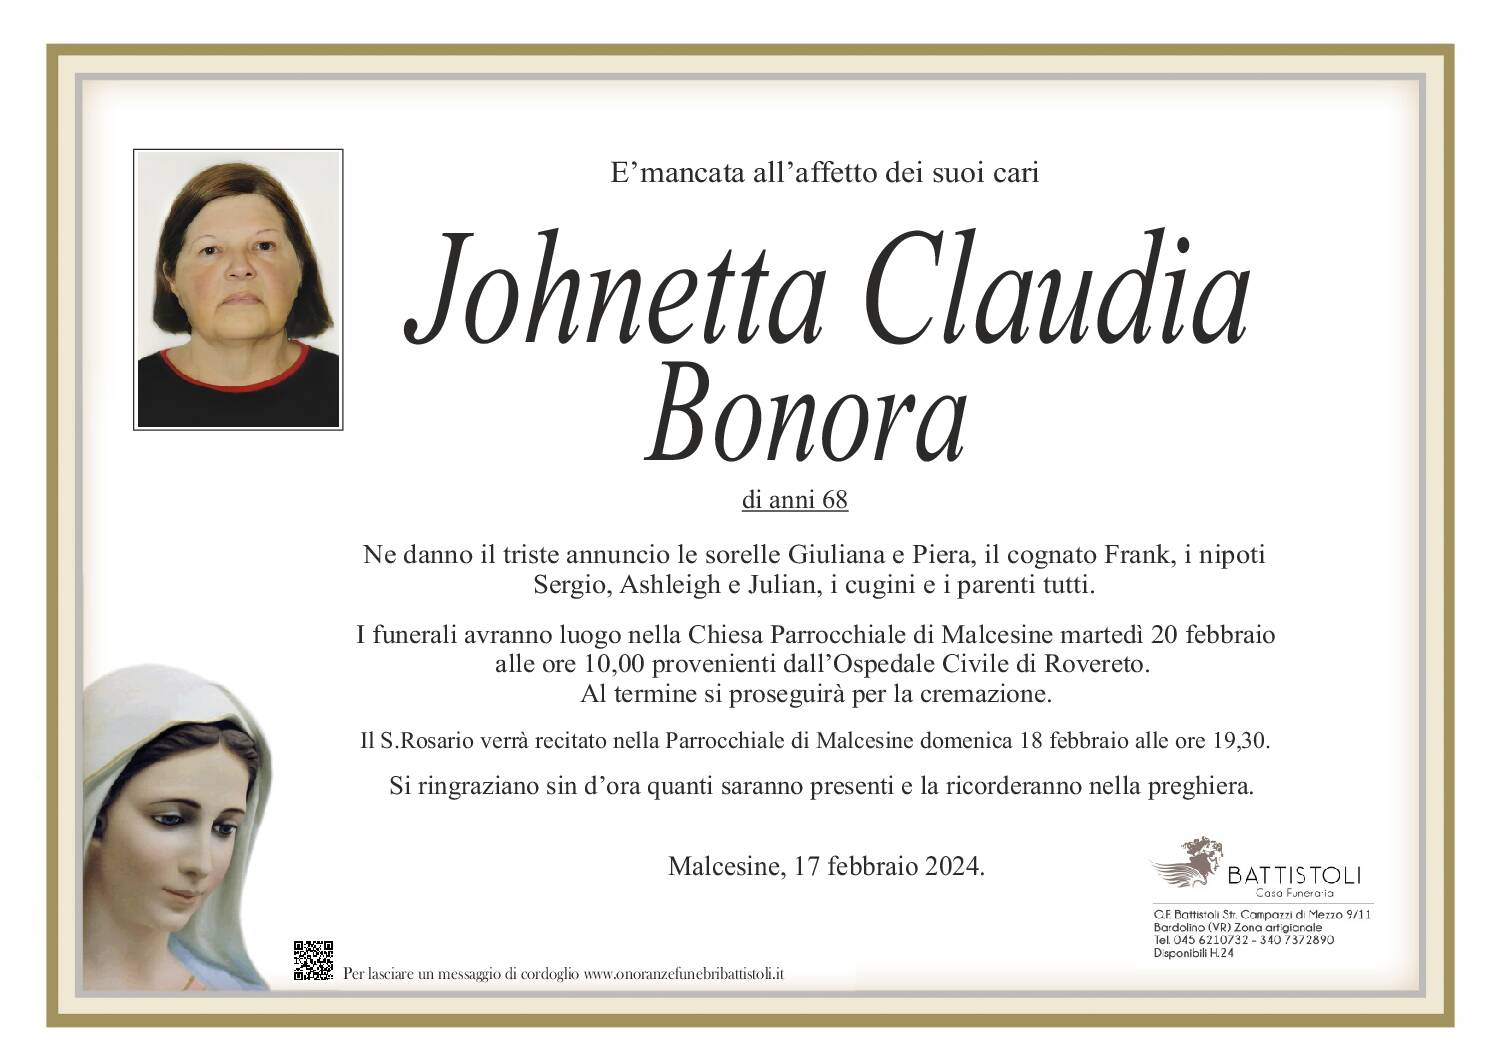 Bonora Johnetta Claudia